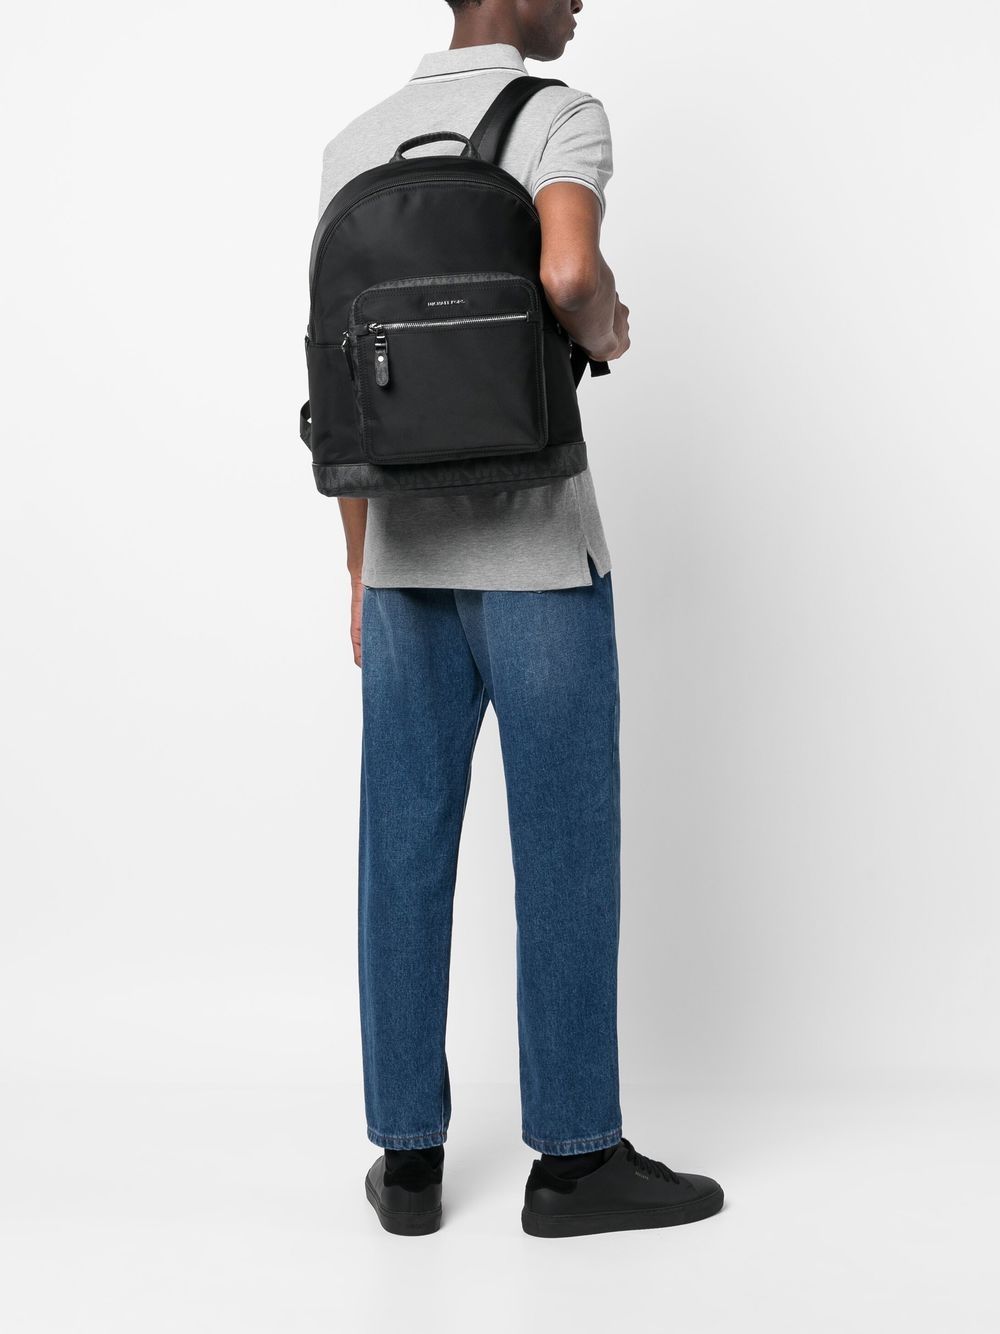 Michael Kors Hudson Monogram Backpack - Black